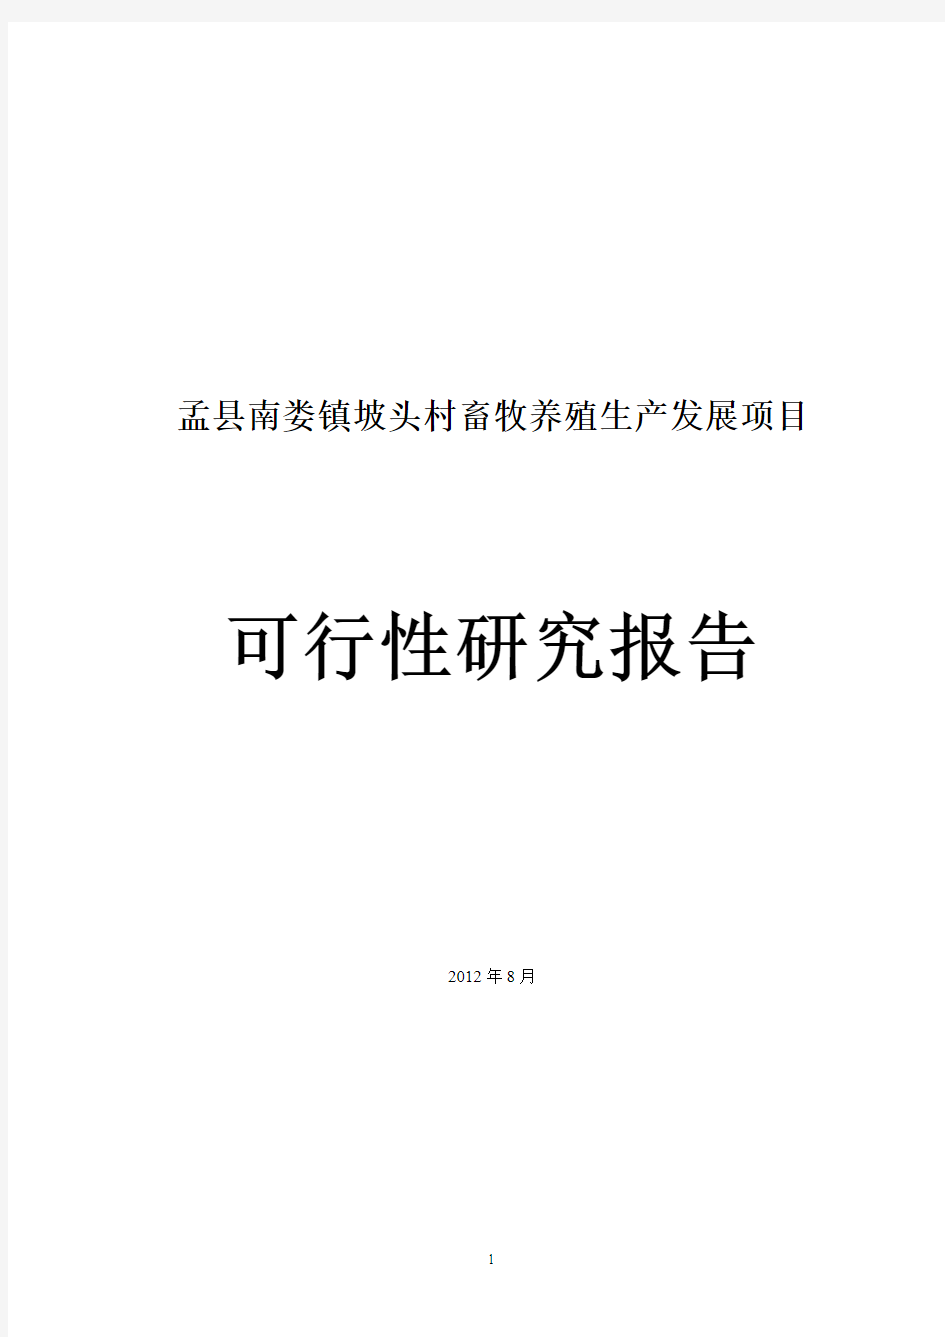 盂县南娄镇坡头村畜牧养殖生产发展项目可行性研究报告1